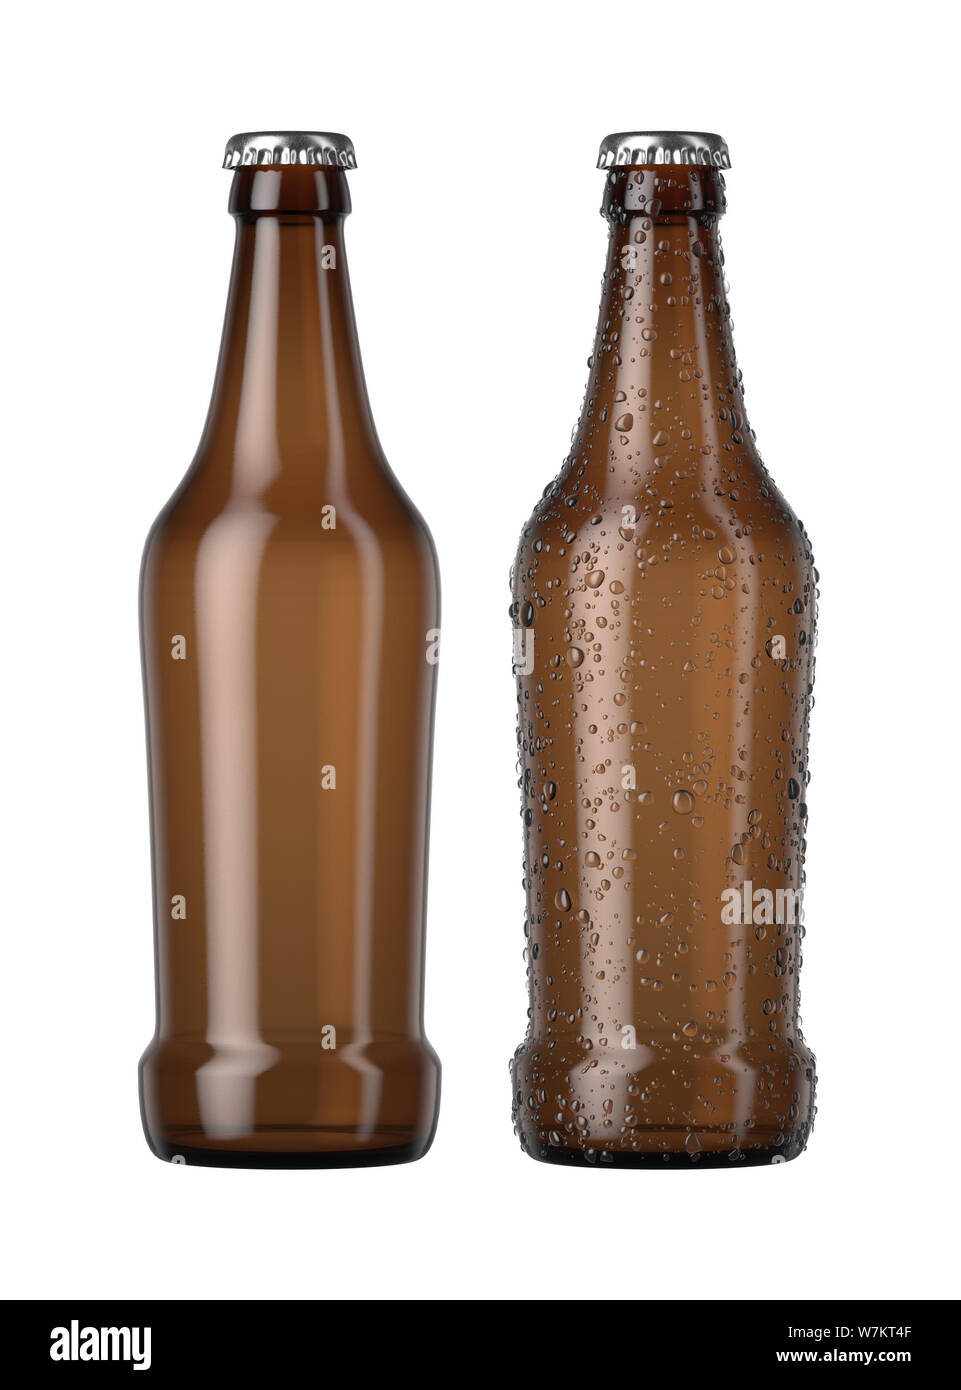 Ein normales Braunglas Bier Flasche neben einem anderen mit Tröpfchen von Kondensation auf einer isolierten weißen studio Hintergrund - 3D-Rendering Stockfoto